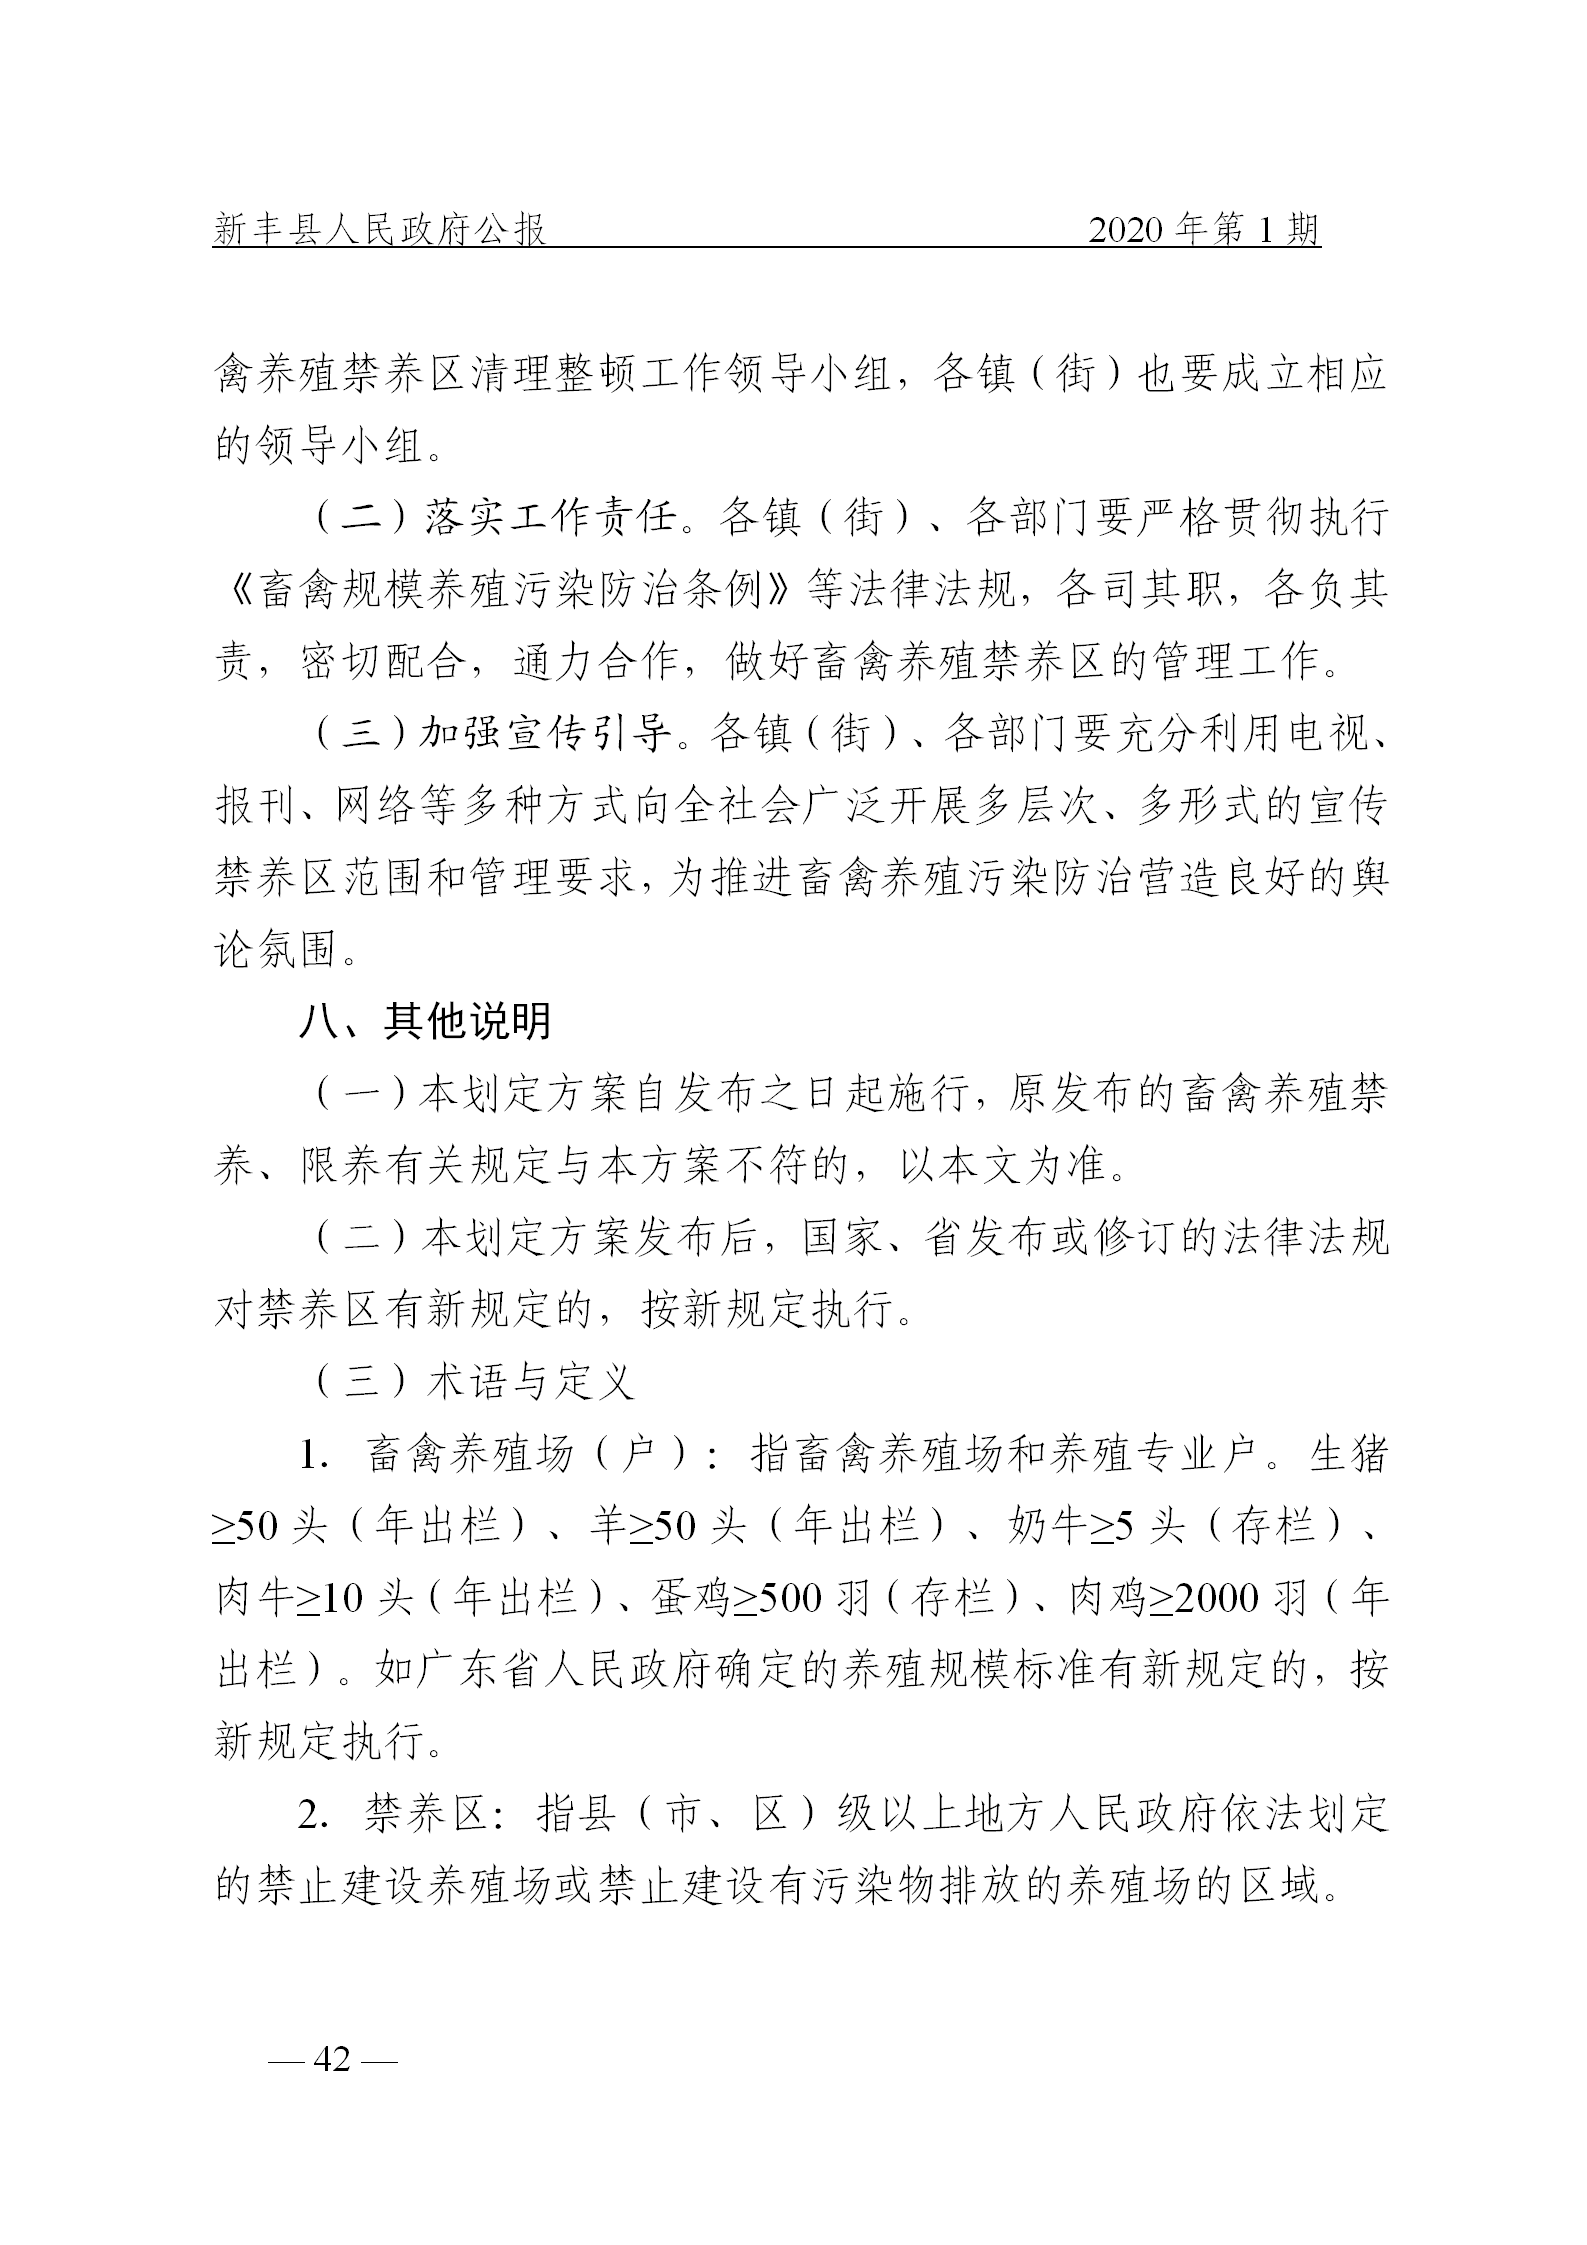 《新丰县人民政府公报》2020年第1期(1)_42.png